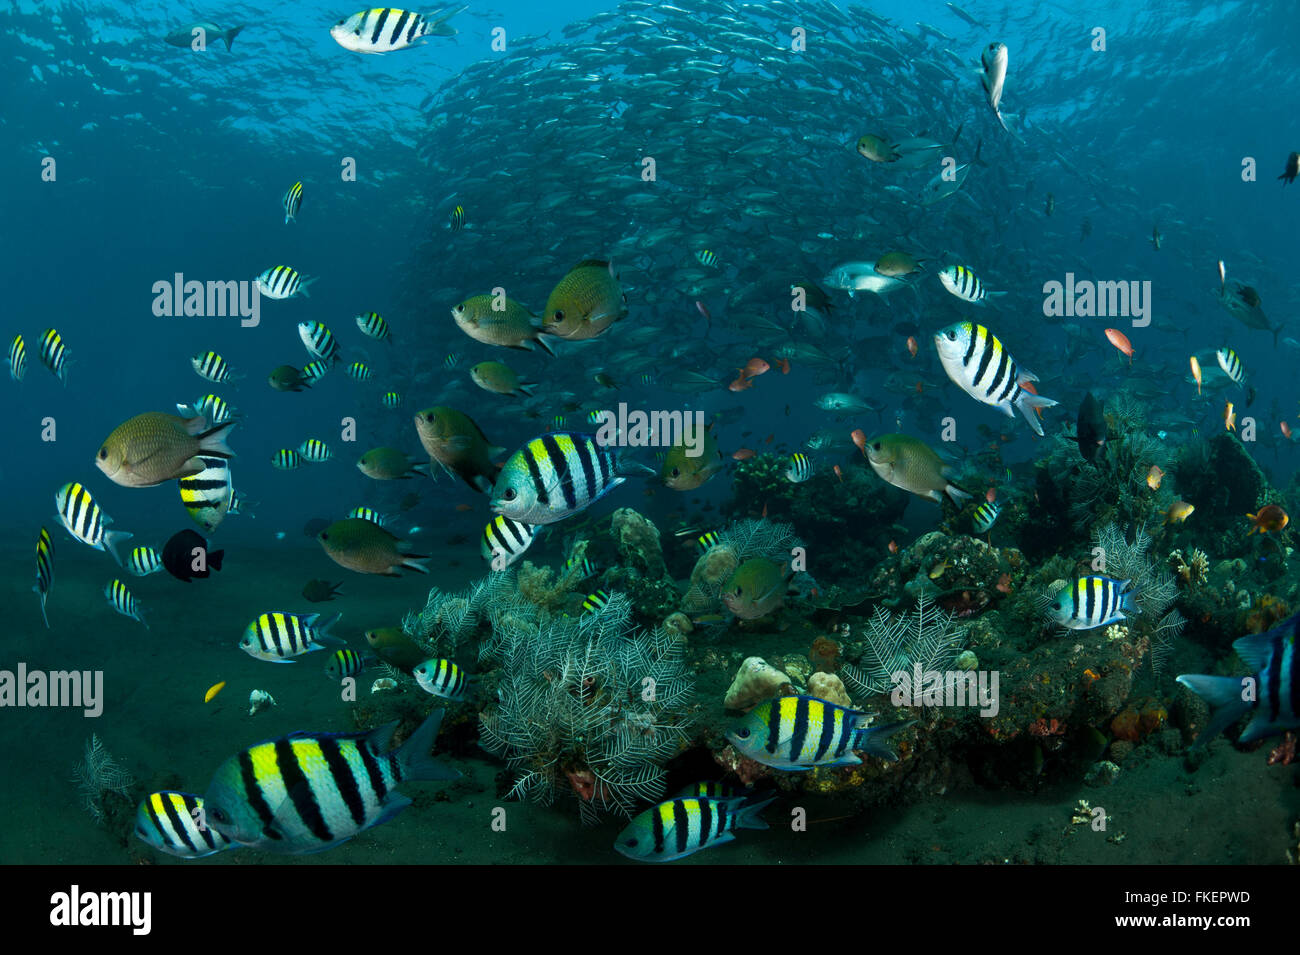 Une variété de poissons de récif et de castagnoles noires abondent autour de la barrière de corail avec la scolarisation les carangues obèse (Caranx sexfasciatus) dans l'arrière-plan. Banque D'Images